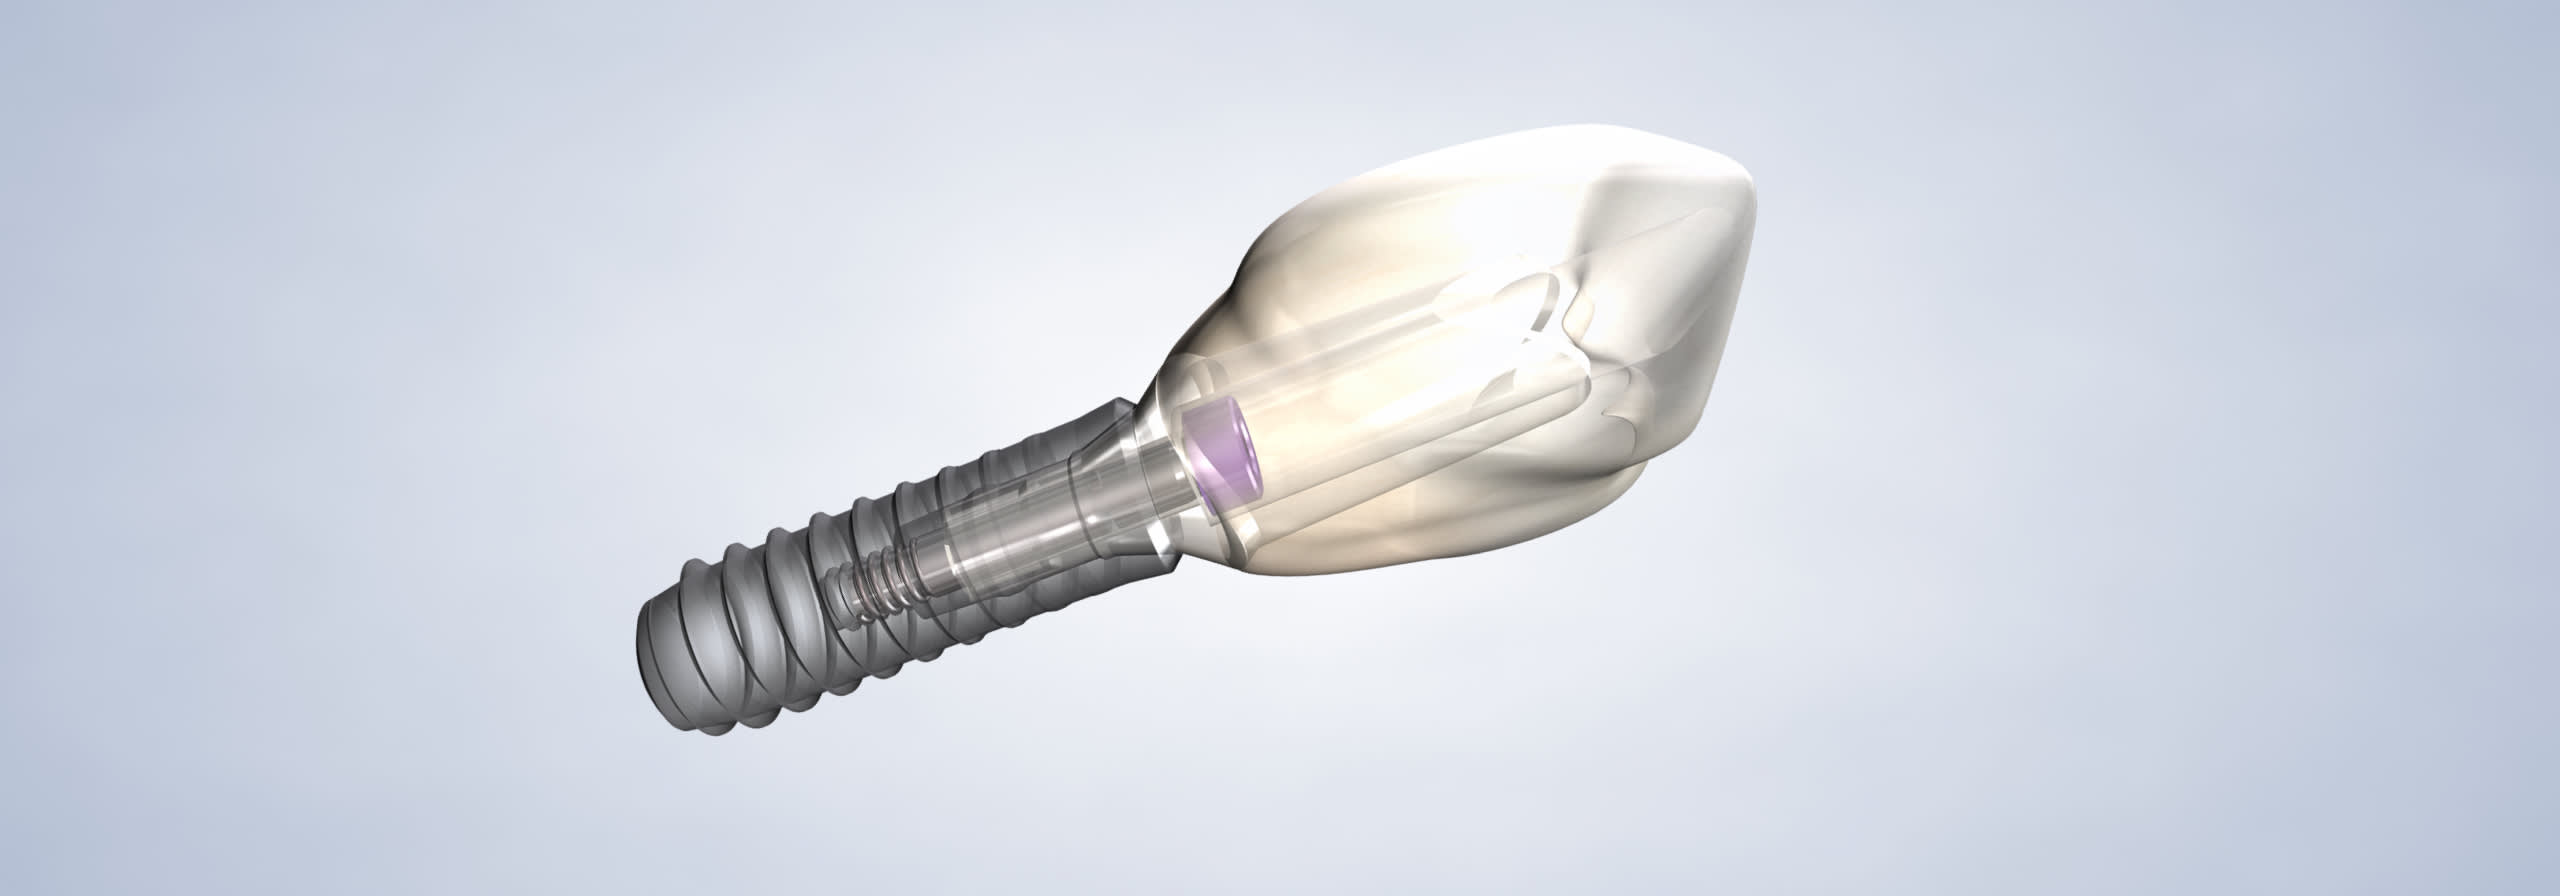 Dental implants procedure desktop